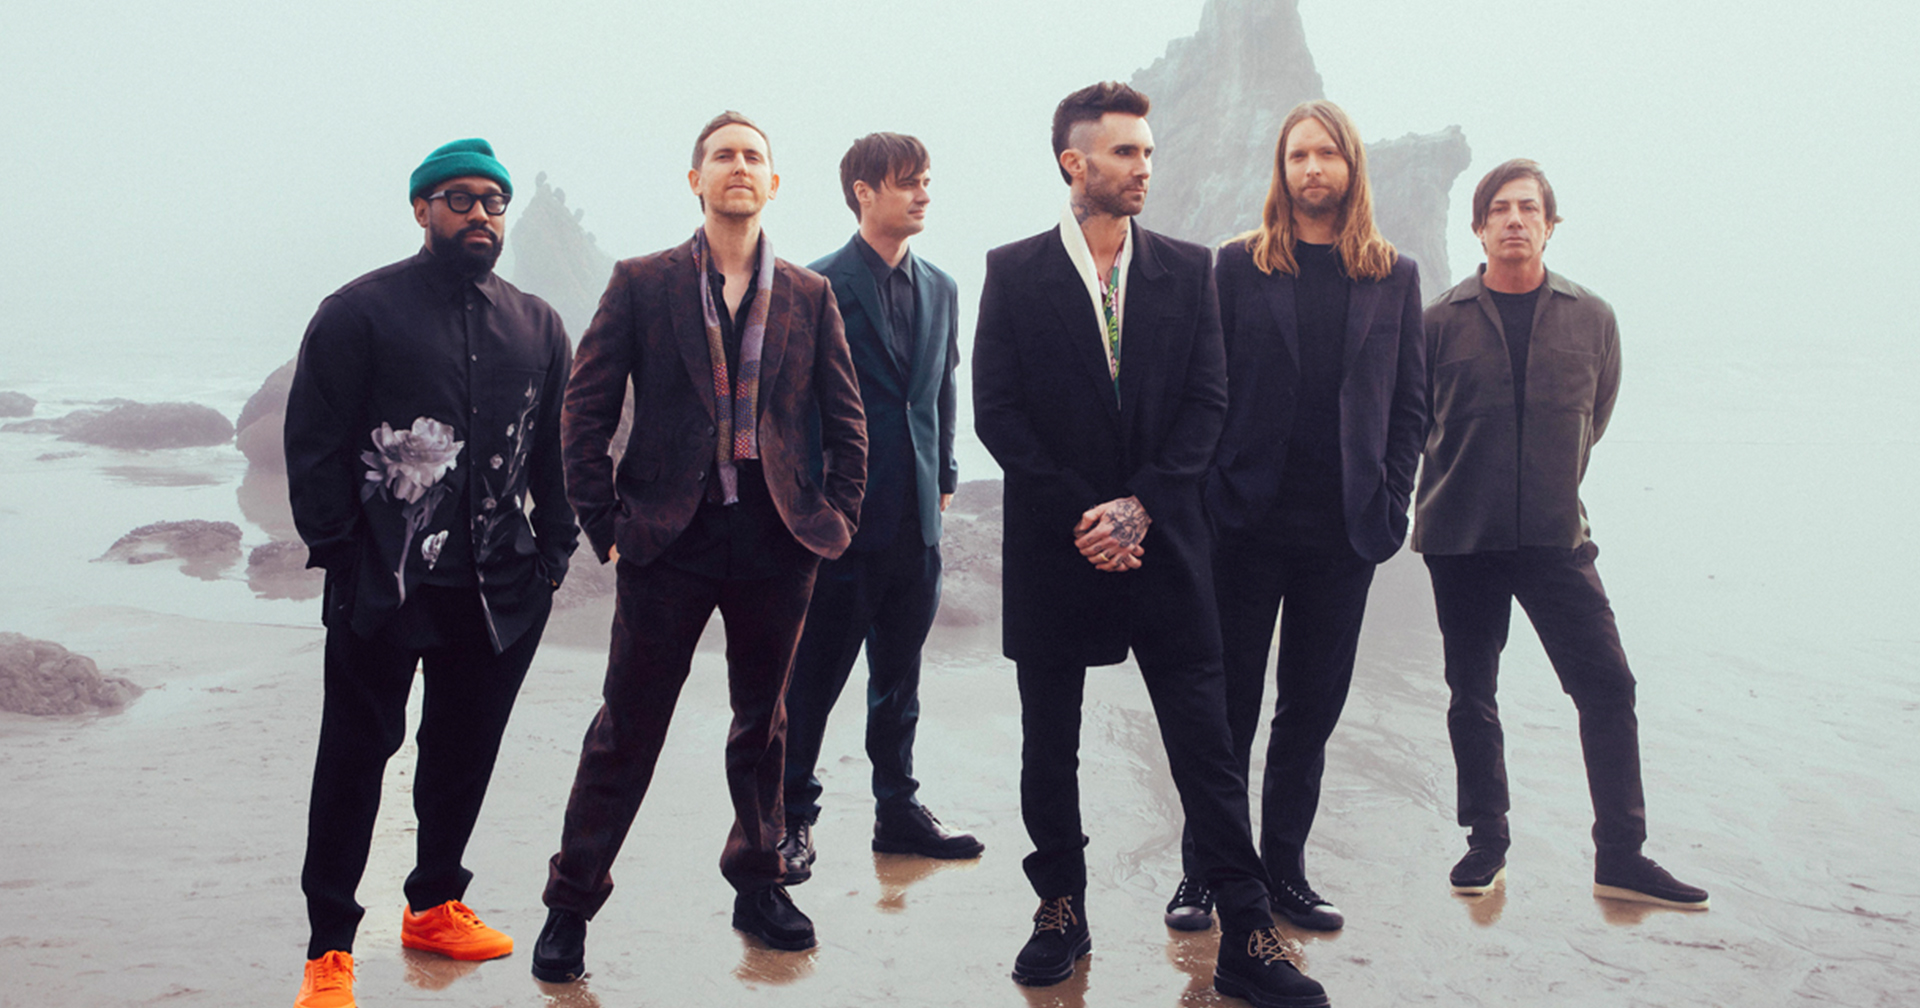 มากันไม่หยุด! Maroon 5 ประกาศเปิดคอนเสิร์ตใหญ่รอบที่ 6 ในไทย ธ.ค. นี้